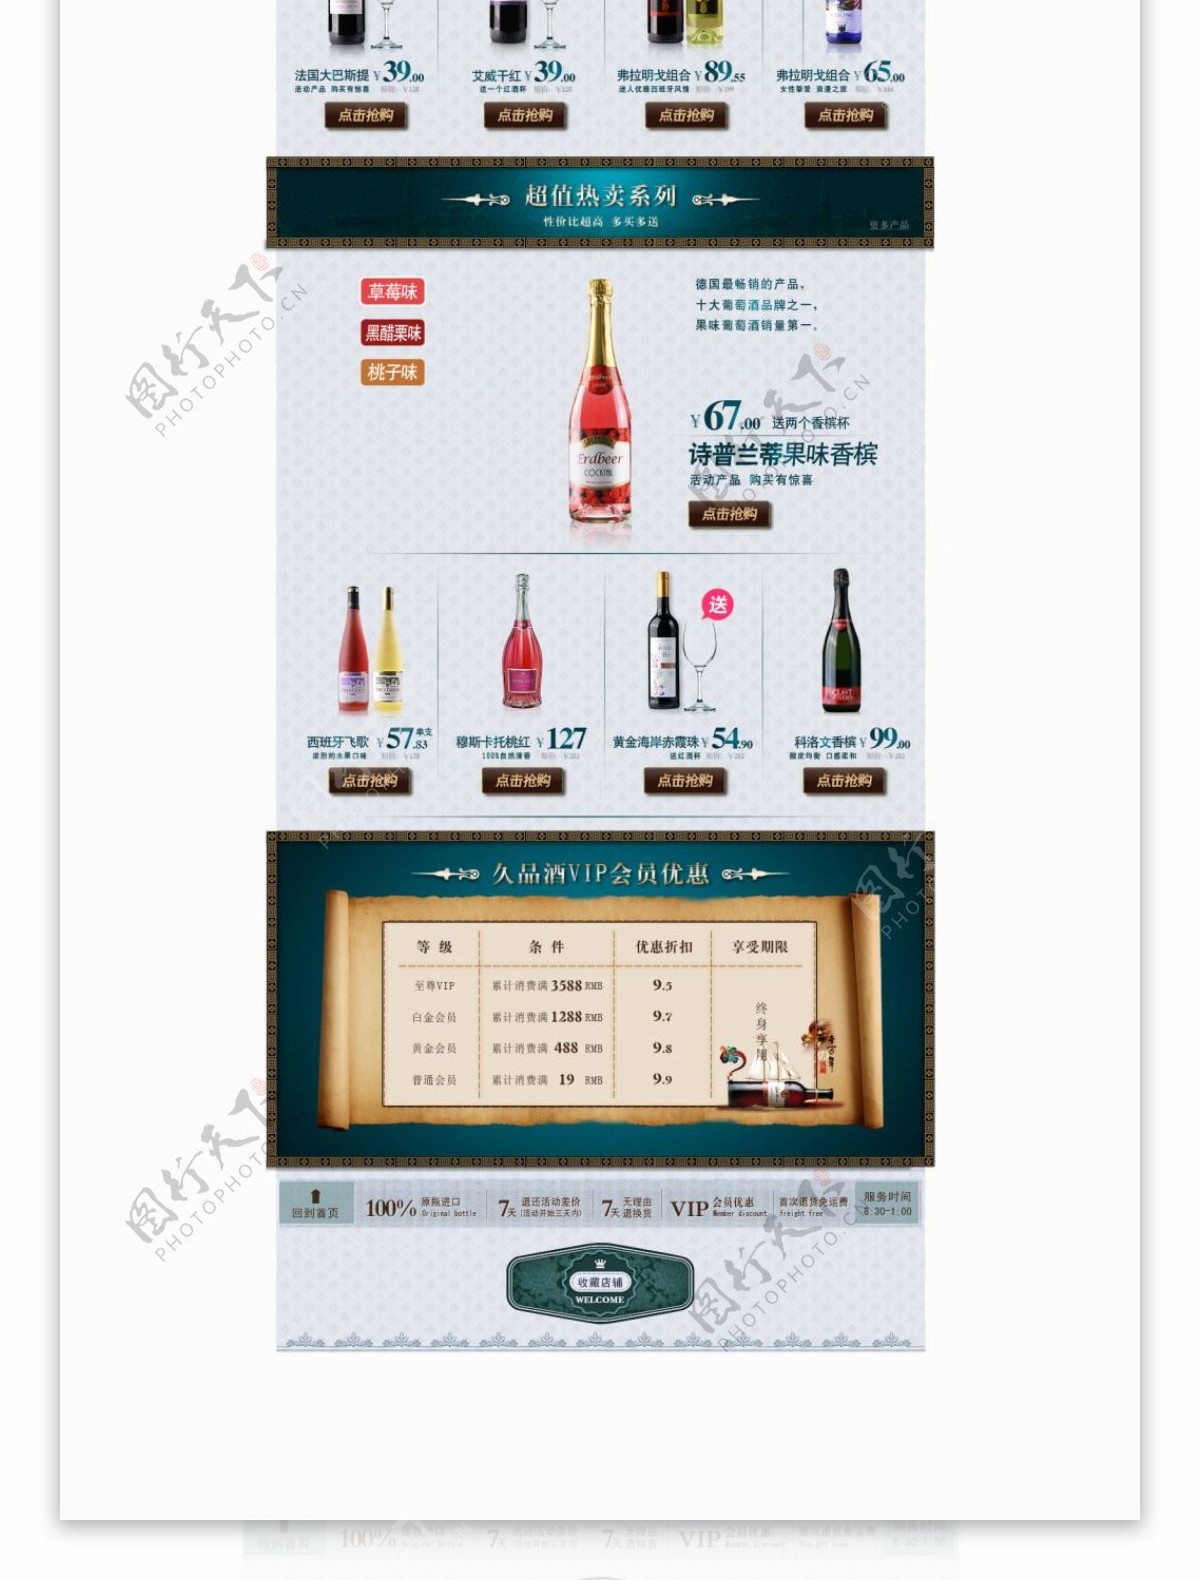 淘宝红酒产品活动海报